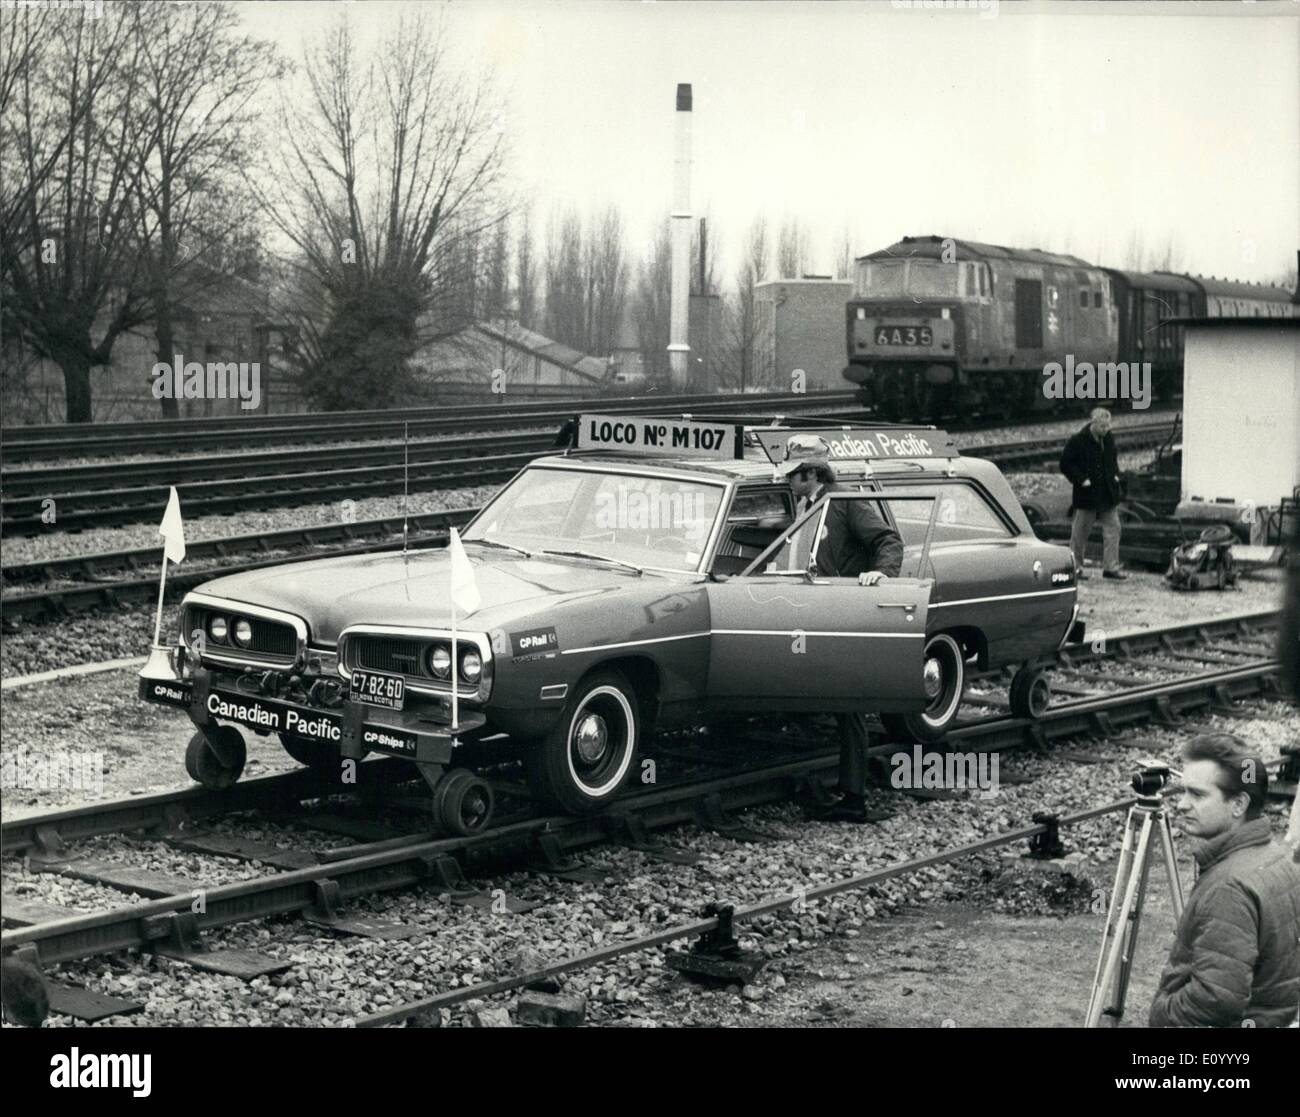 12. Dezember 1971 - Demonstration der CP Schienen Hy-Schieneneinheit: eines der ungewöhnlichsten Autos jemals anzukommen in Großbritannien zeigte sich heute in West Drayton Bahnhof. Britische Schiene freundlicherweise zugestimmt, Canadian pacific Railway - cp Rail anzuzeigenden Hy-Rail Einheit, eines der ungewöhnlichsten Elemente der Fahrzeuge des Unternehmens, die es auf einen kurzen Besuch in Großbritannien war. das Auto, der mit seiner offiziellen Benennung - Hy Schieneneinheit, ist in der Tat eine typische nordamerikanische Kombi mit einem großen Unterschied - es wurde entwickelt, um auf Eisenbahnstrecken als Wel s Straßen laufen Stockfoto